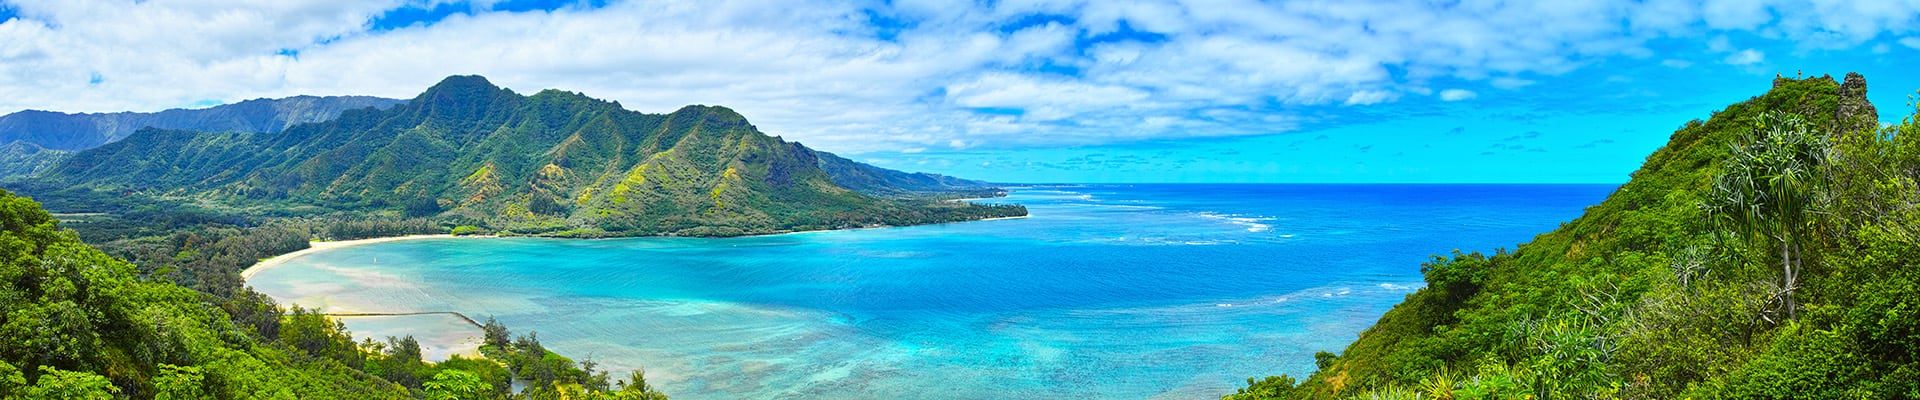 hawaiian island hopper cruises